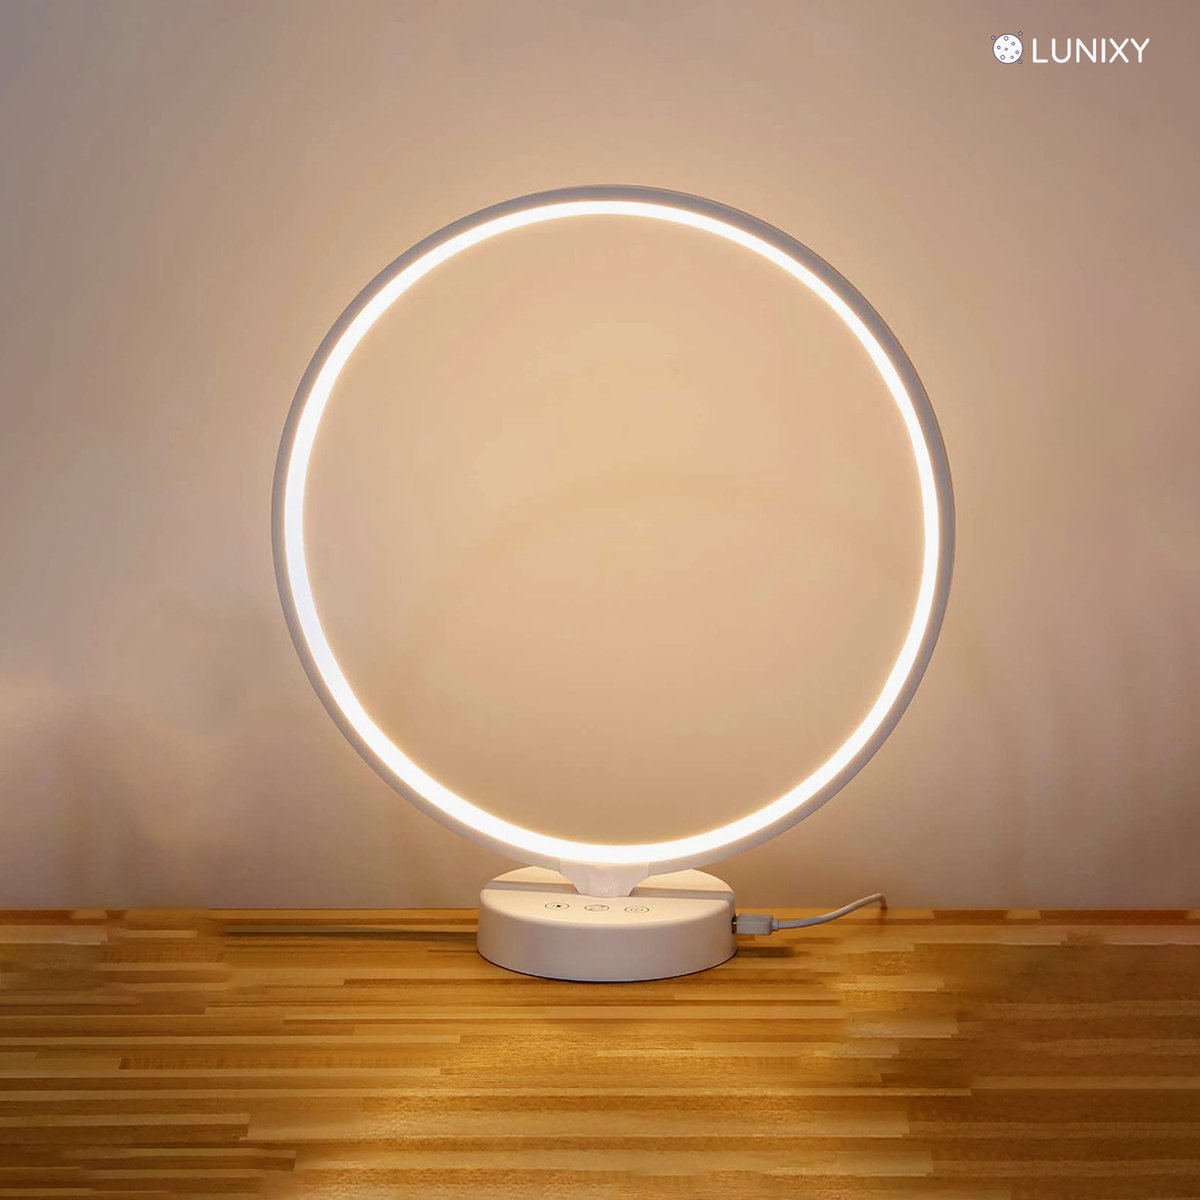 Lunixy® Premium Daglichtlamp - Bureaulamp - 10000 LUX - Timer - Zonsondergang Modus - 3 kleuren - UV-vrij - Lichttherapie - LUNIXY